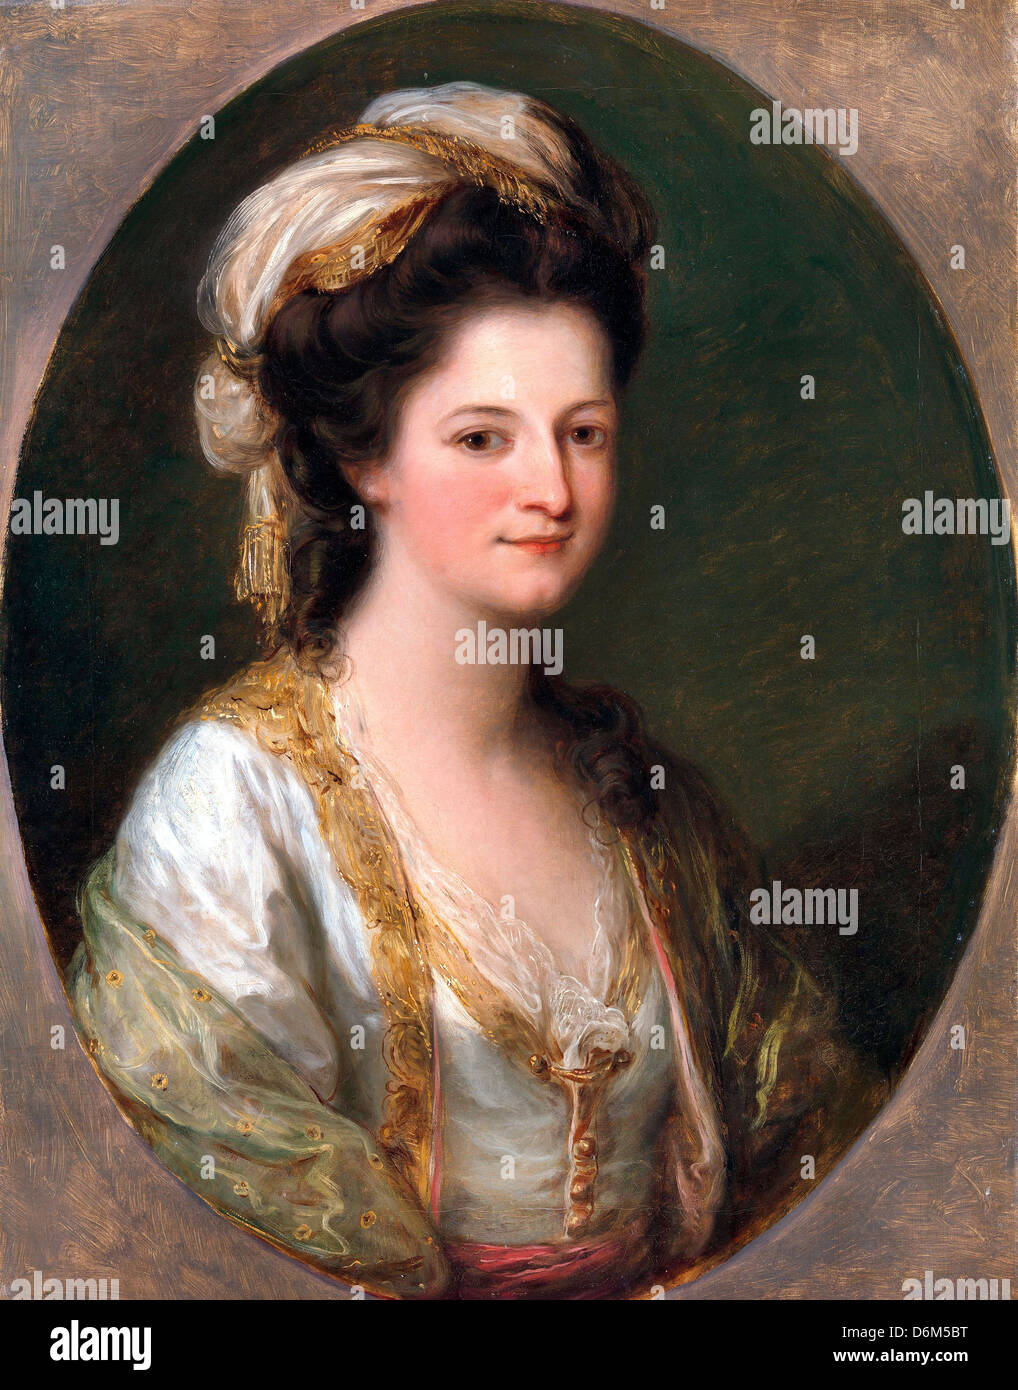 Angelica Kauffman, Retrato de una mujer, tradicionalmente identificados como Lady Hervey. Circa 1770. Óleo sobre lienzo. Foto de stock